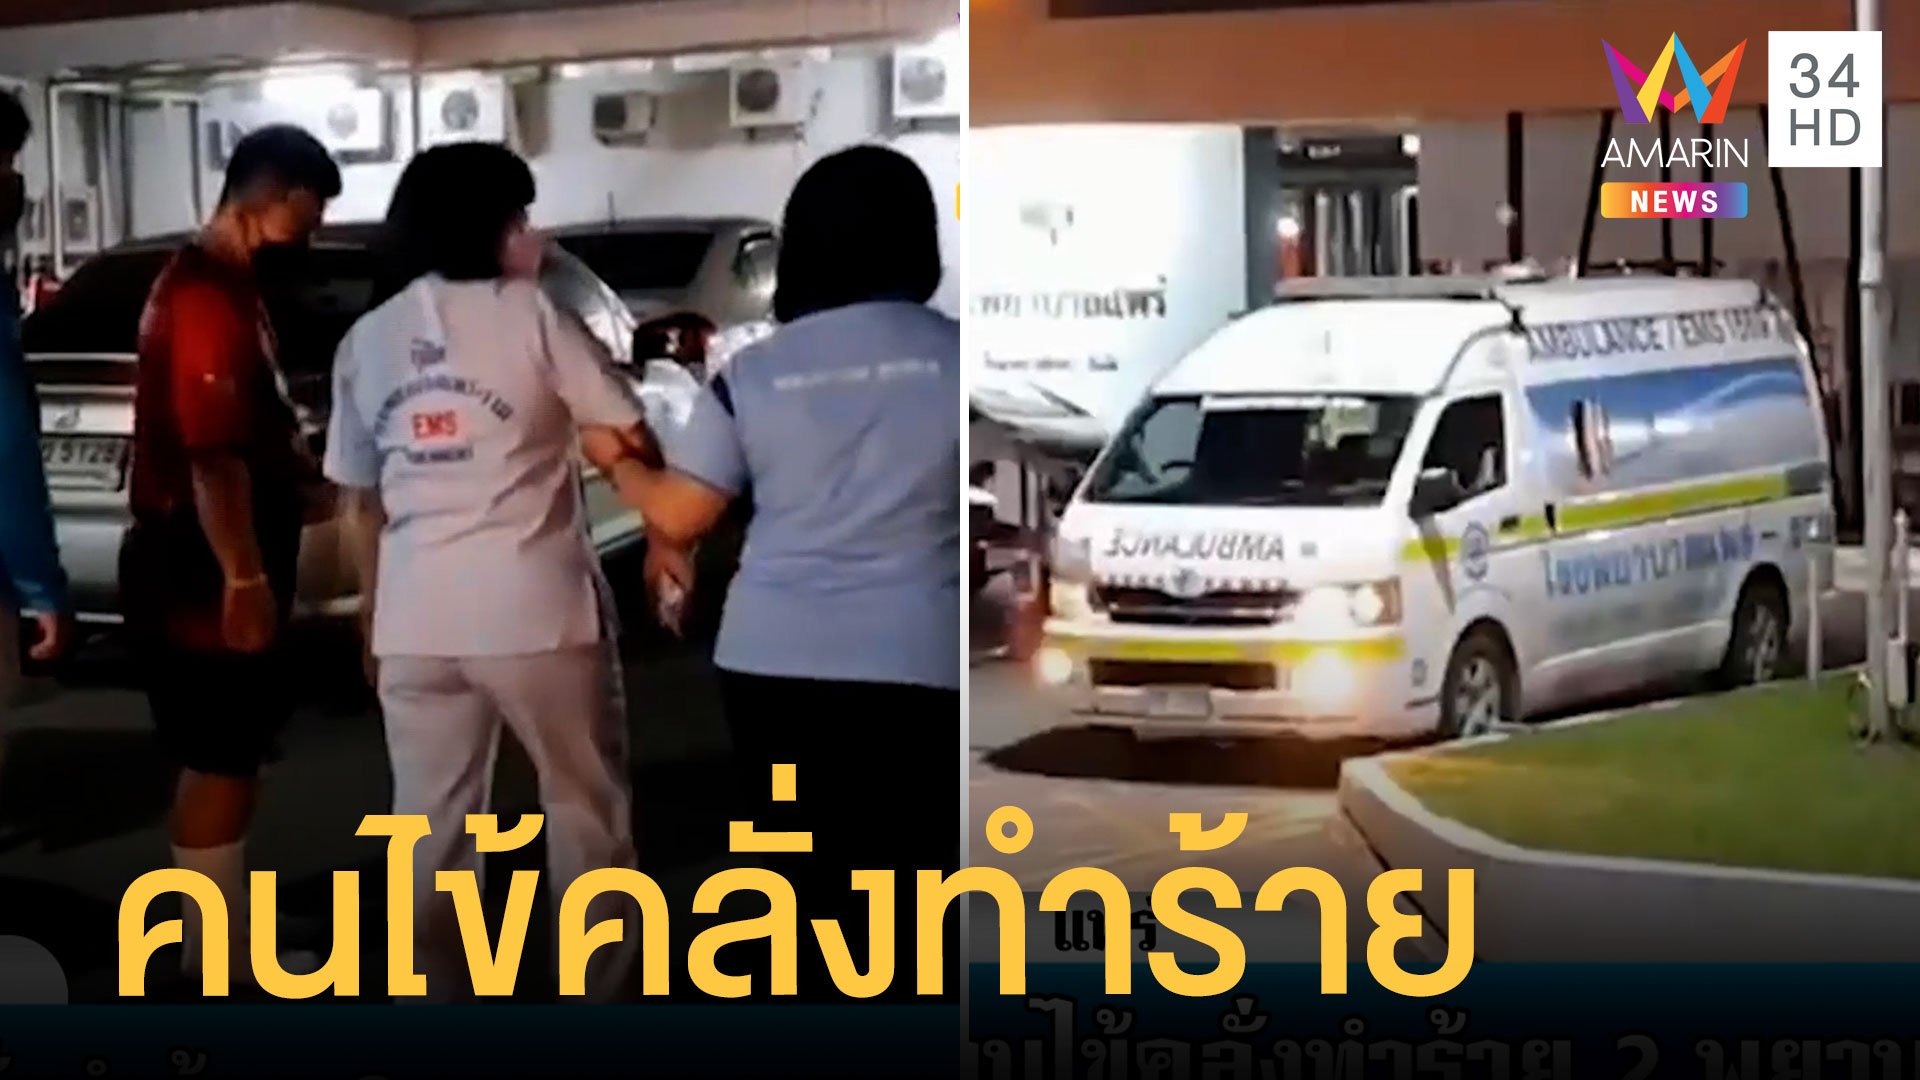 คนไข้คลั่งทำร้าย 2 พยาบาลบนรถฉุกเฉิน | ข่าวเที่ยงอมรินทร์ | 19 มิ.ย. 65 | AMARIN TVHD34